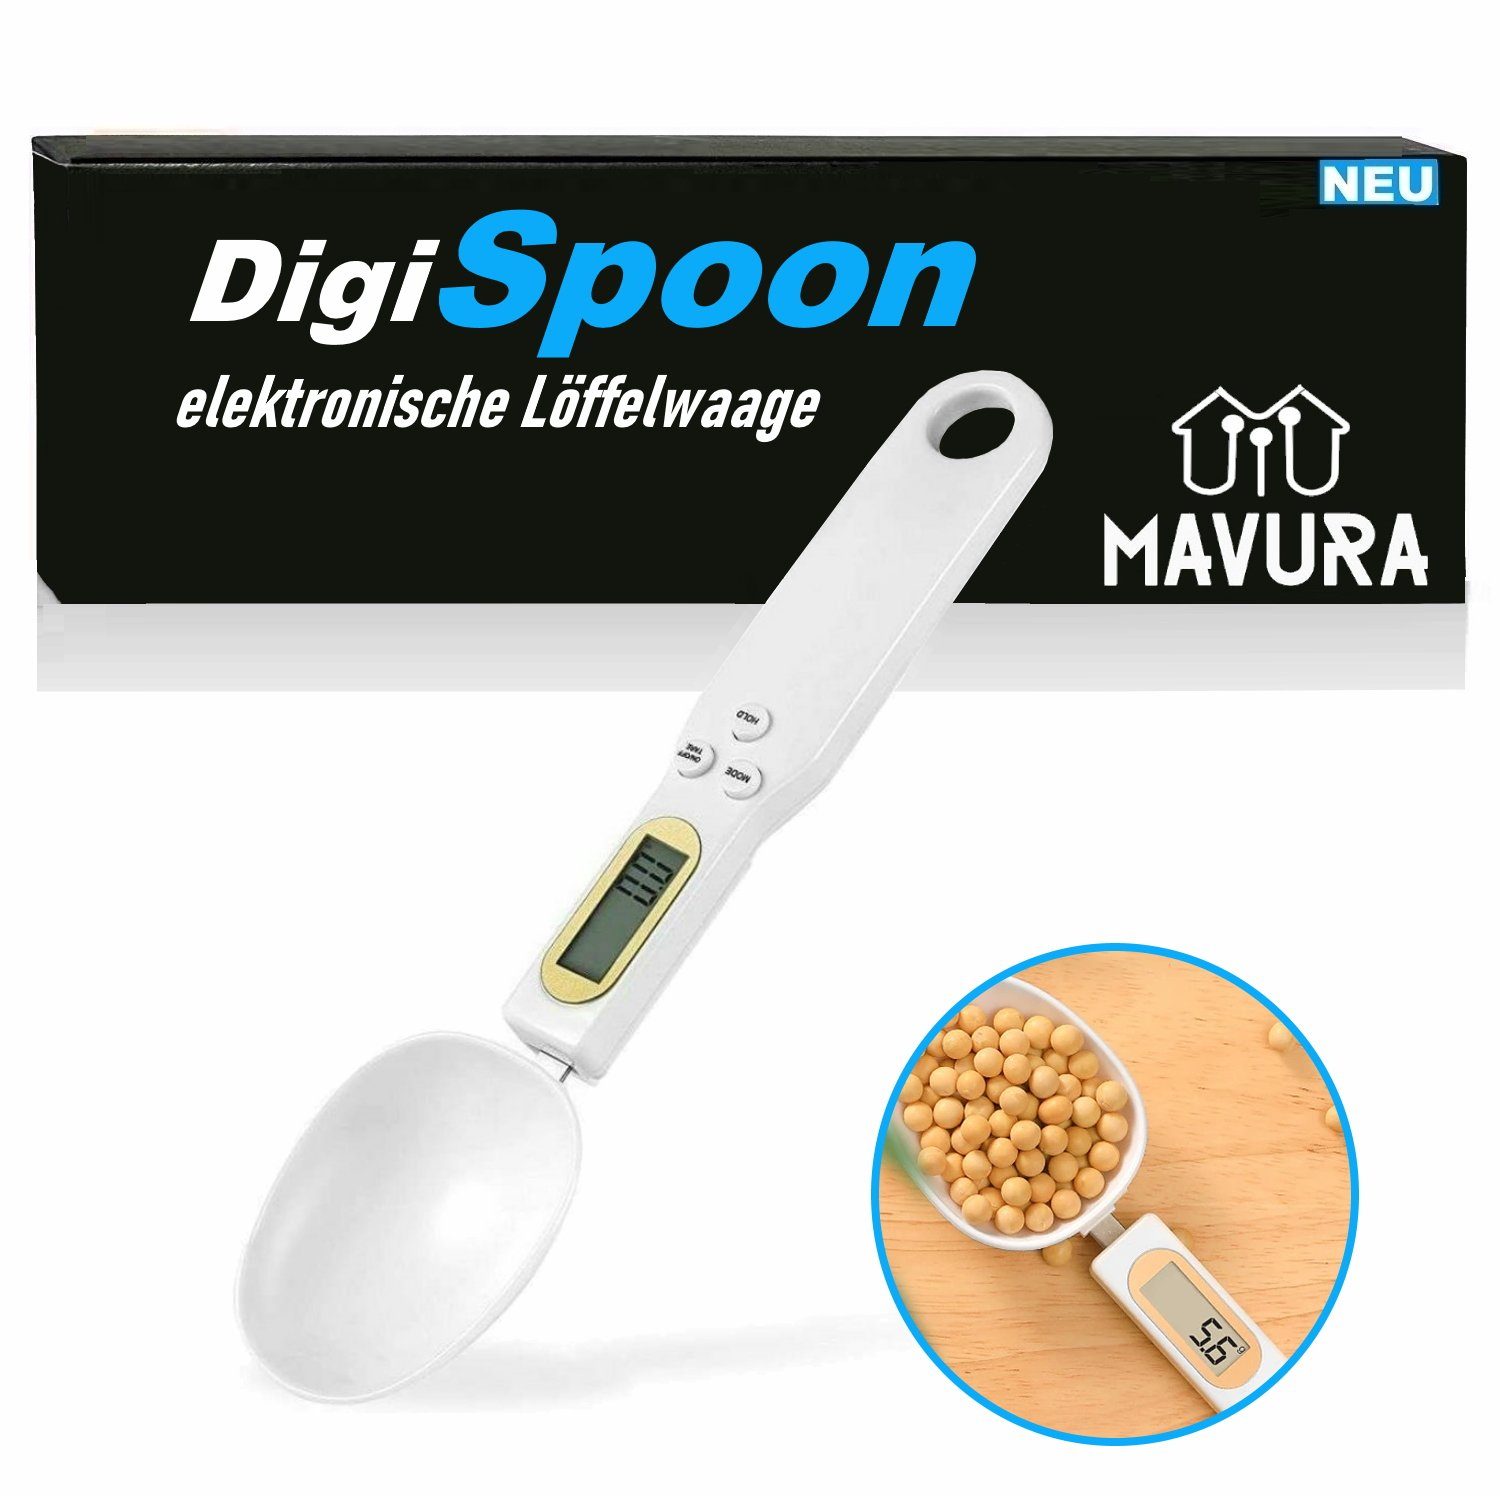 MAVURA Löffelwaage DigiSpoon Digitale Löffelwaage mit LCD Anzeige, Messlöffel elektronische Küchenwaage 0,1 Gramm genau | Küchenwaagen